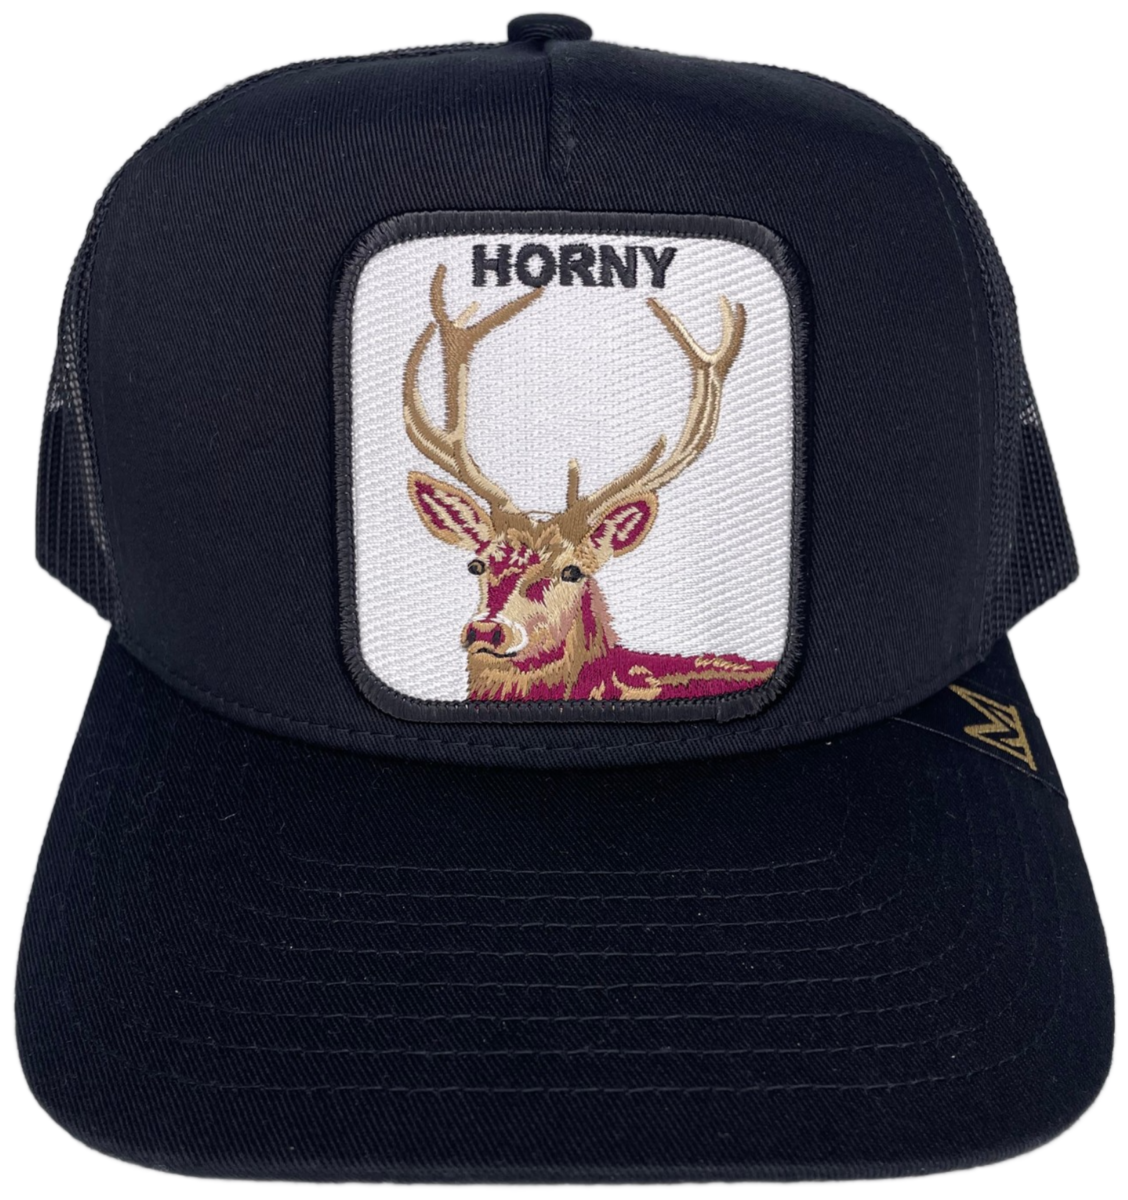 MV Dad Hats - Horny Trucker Hat - Black/Black